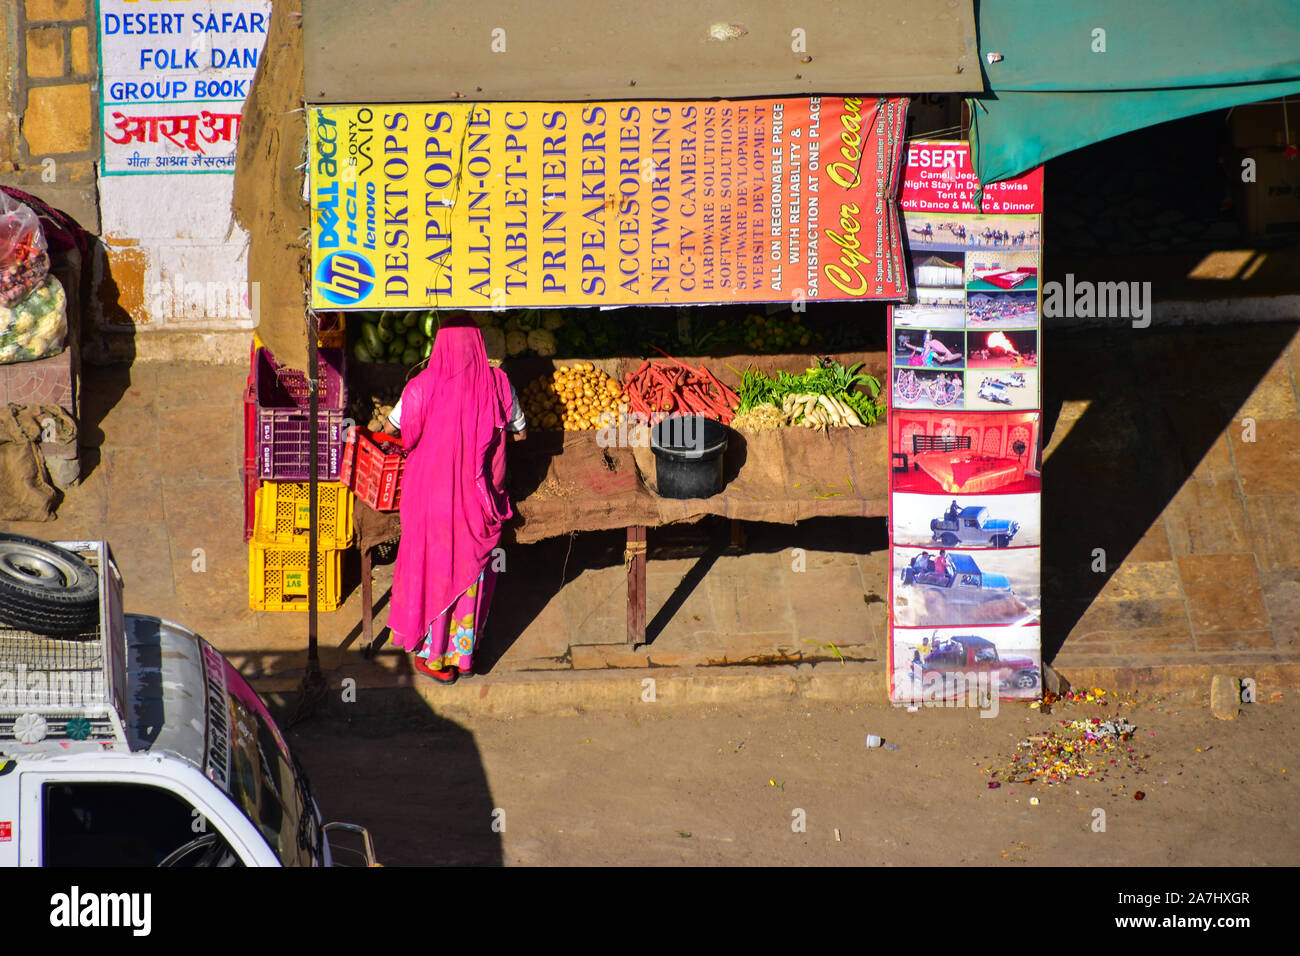 Pink Saree, Indian Market Stall, Jaisalmer, Rajasthan, India Stock Photo